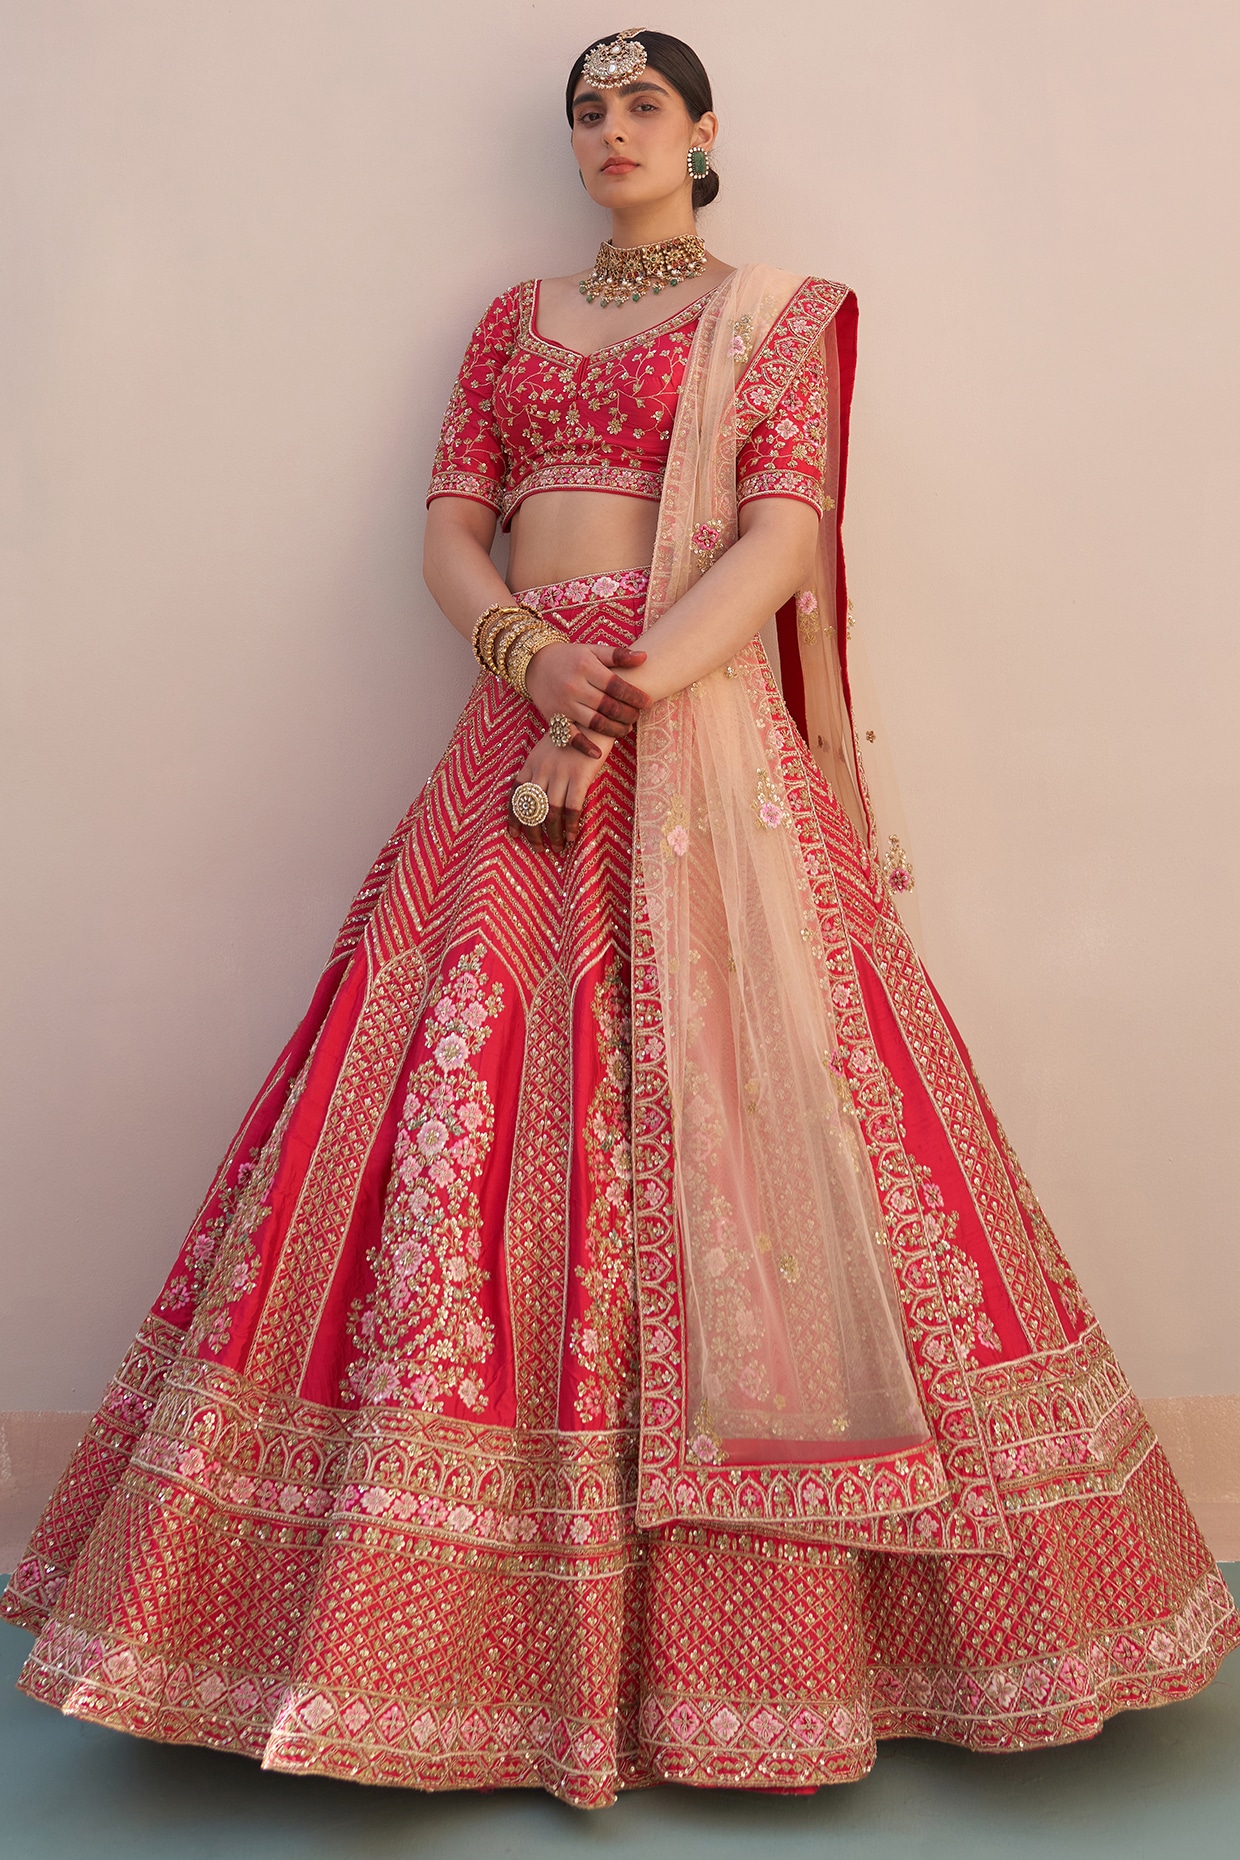 royal gold bridal lehenga with threadwork and zardozi | Indian fashion  trends, Indian fashion, Bridal lehenga